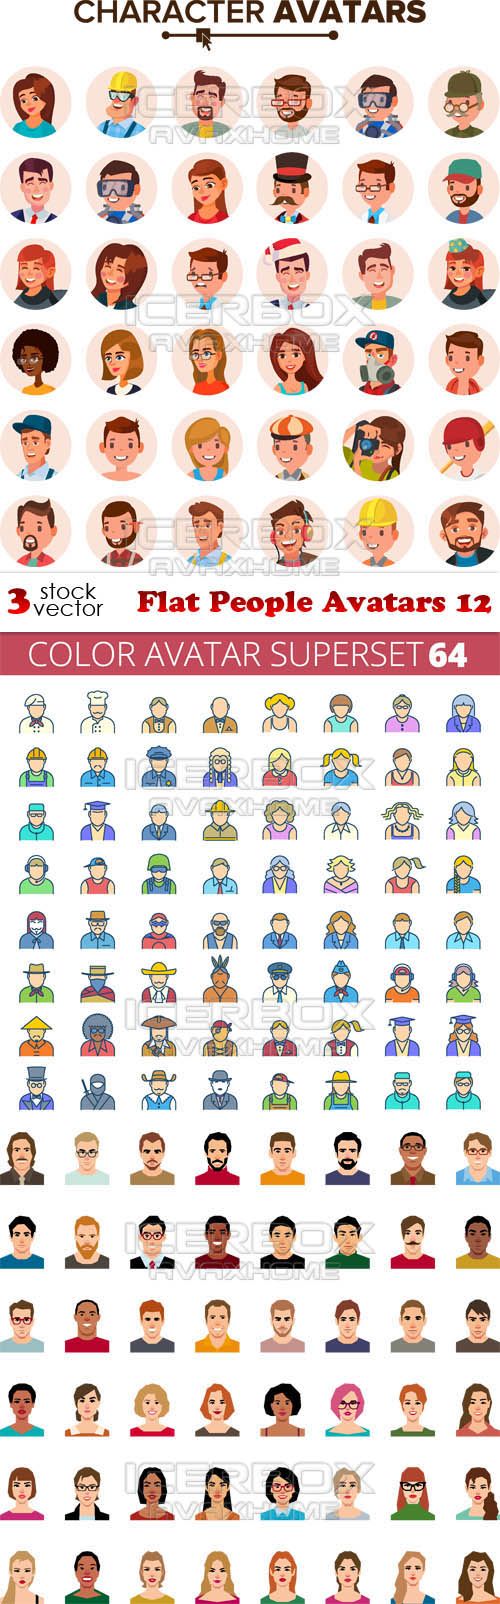 Vectors – Flat People Avatars 12